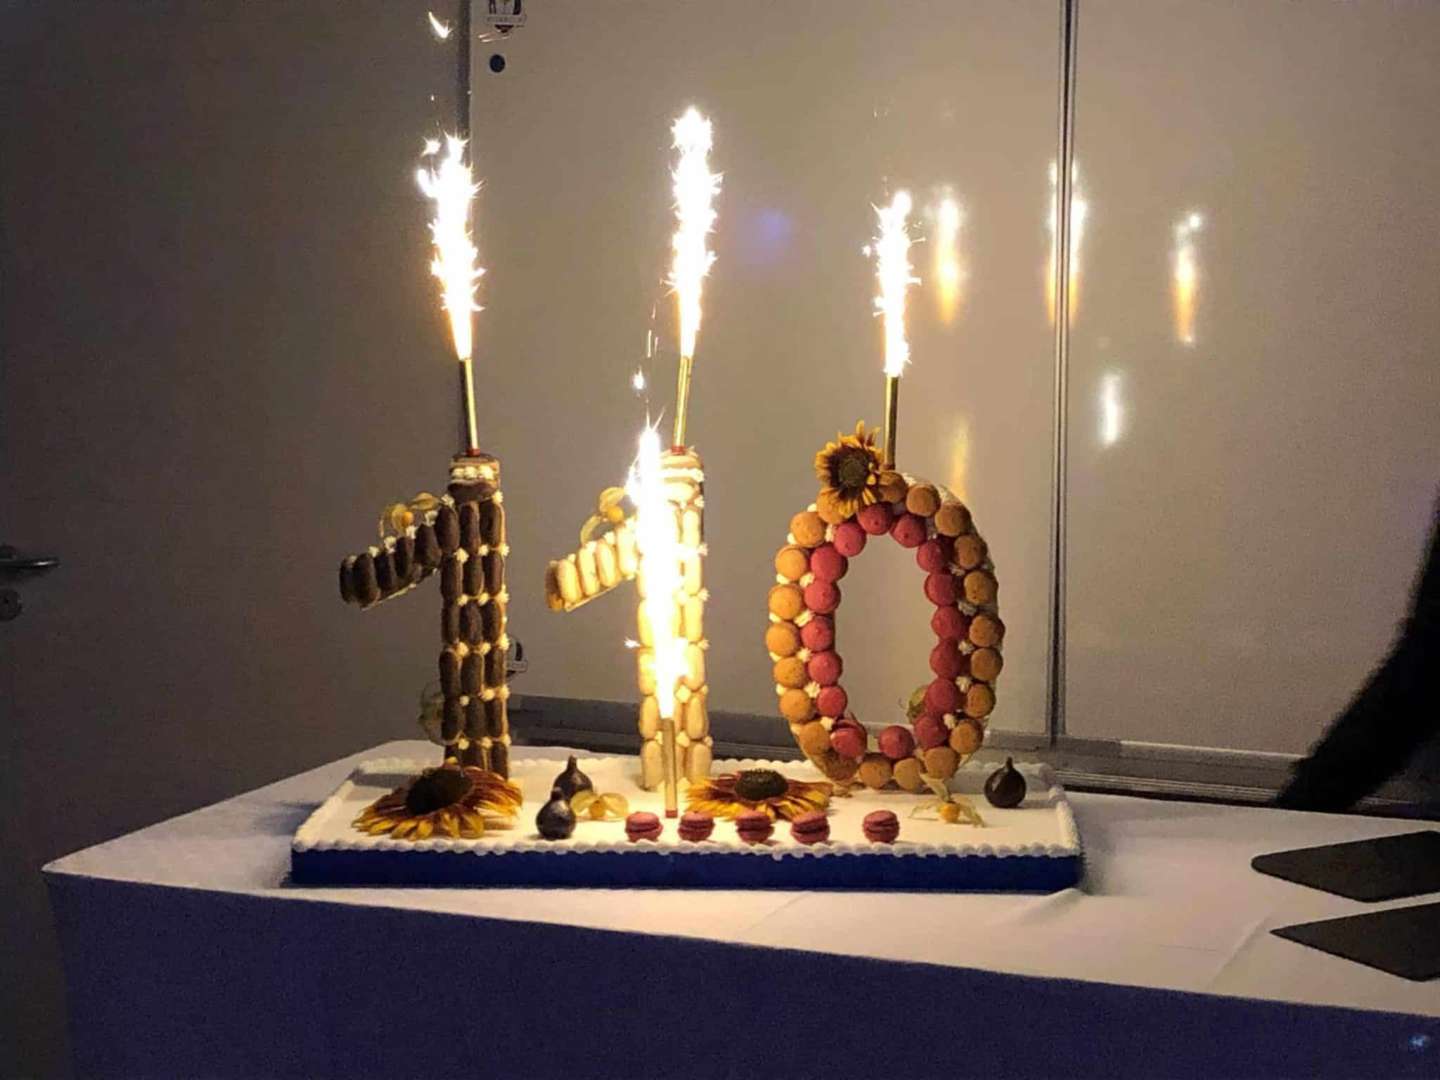 110 ans : un magnifique week-end d’anniversaire !